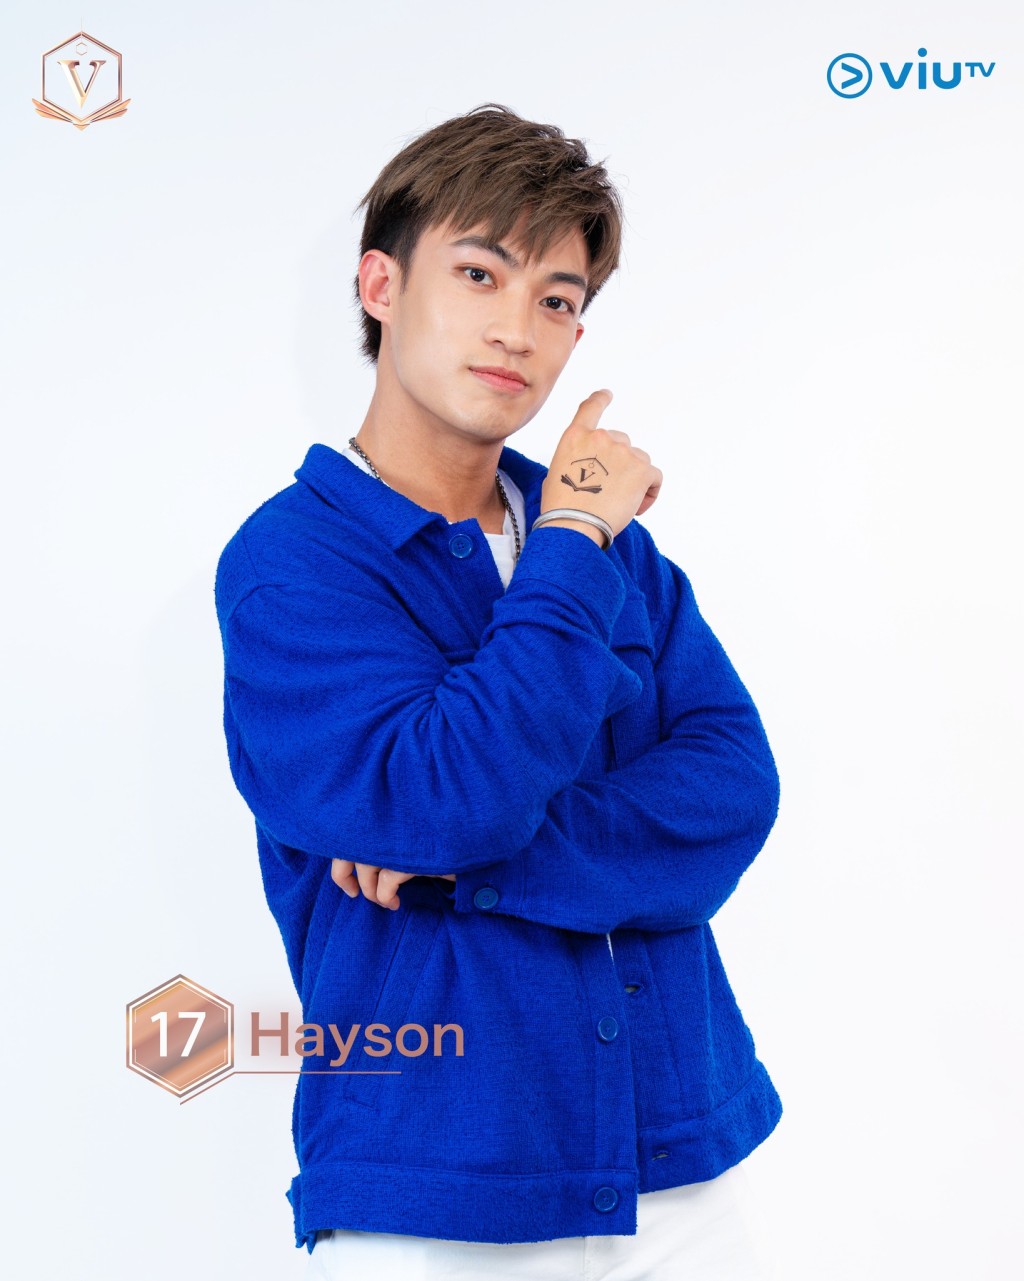 郭澧羲（Hayson） 年龄： 25 职业： 篮球教练、模特儿 擅长： 唱歌、篮球、壁球、剑击 IG：laiheikwok